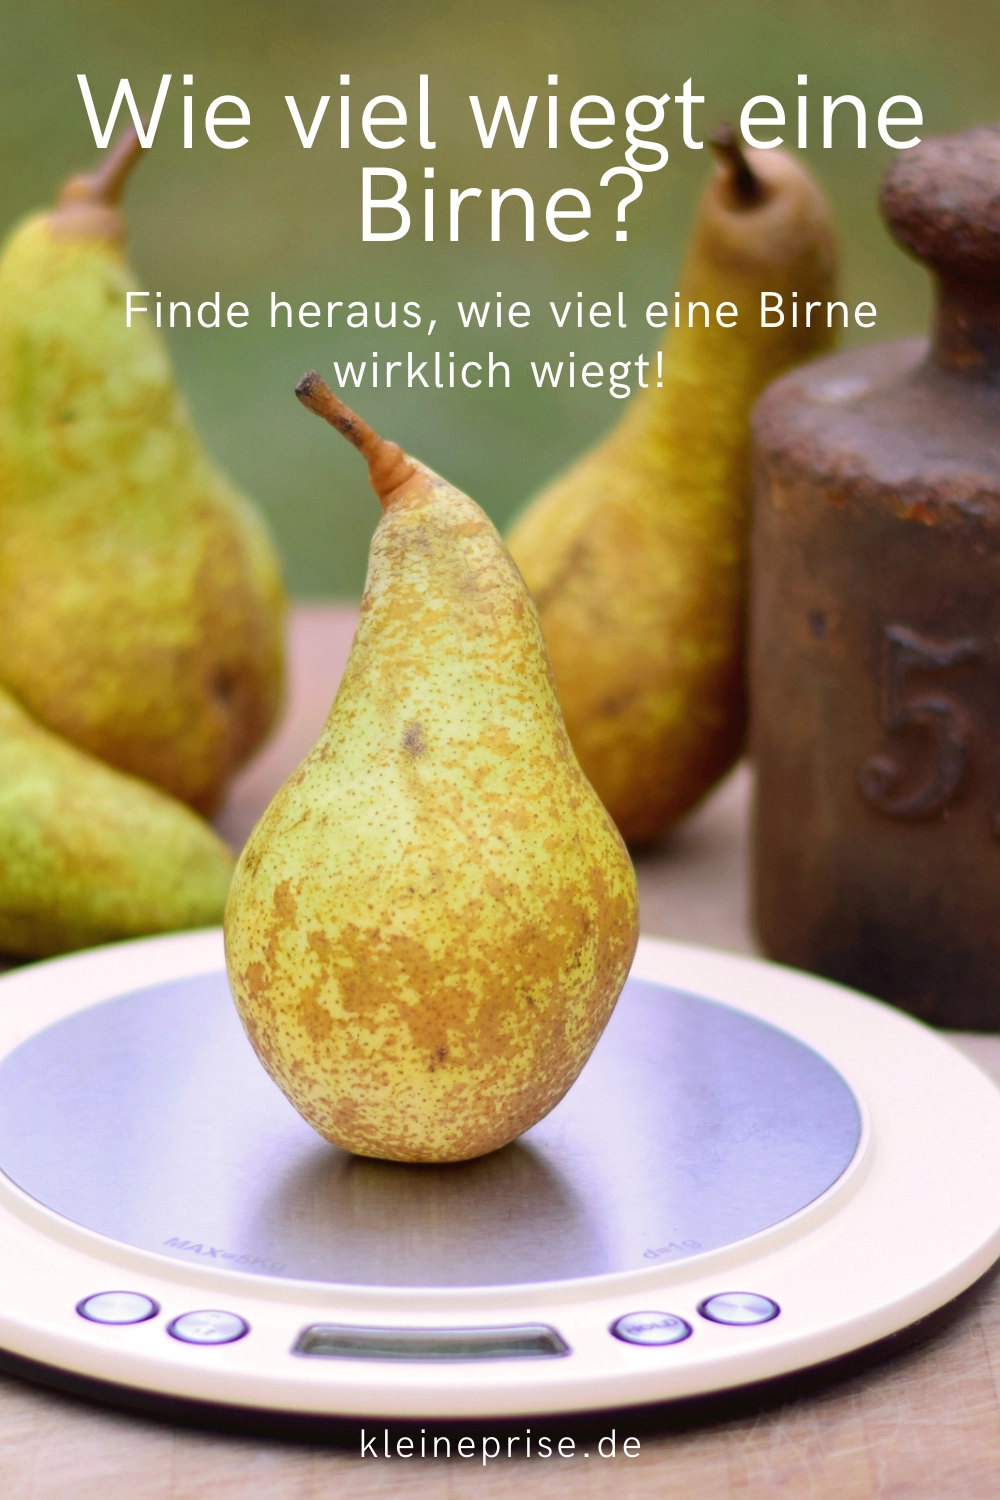 Pin es bei Pinterest: Wie viel wiegt eine Birne?